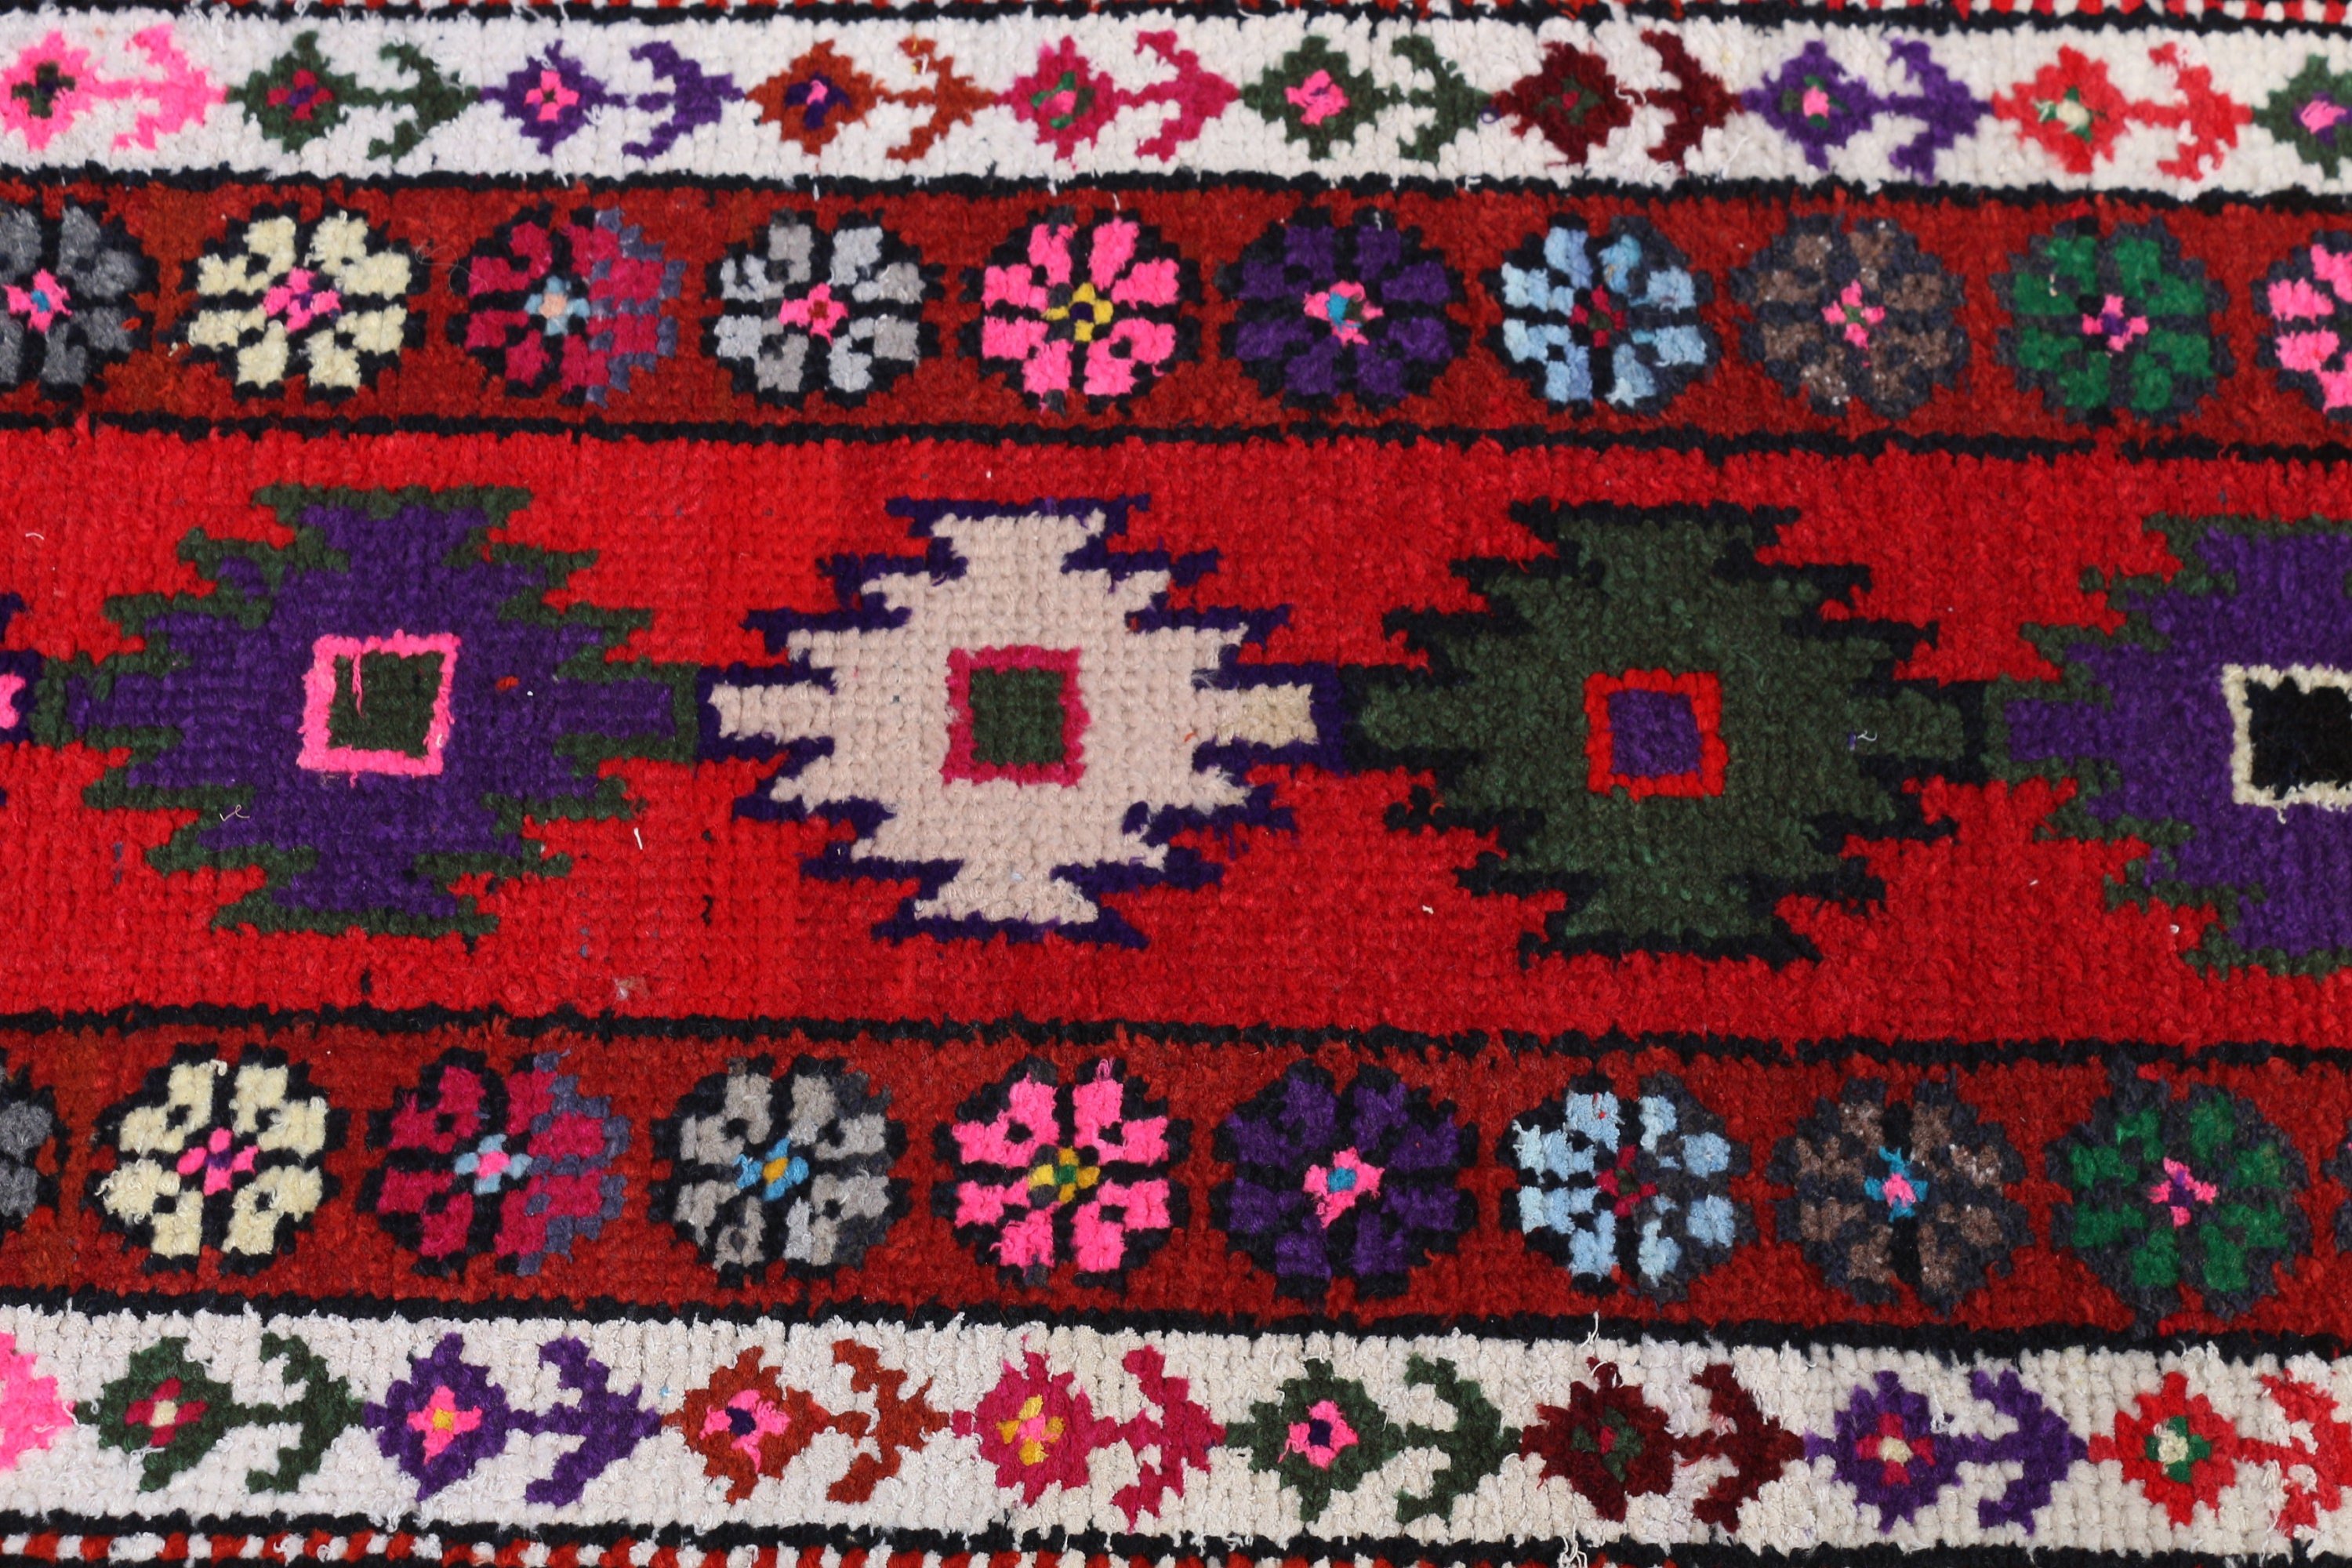 Vintage Rug, Rugs for Runner, Wool Rug, Turkish Rugs, Antique Rug, 2.1x9.2 ft Runner Rug, Pink Antique Rugs, Ethnic Rugs, Corridor Rug